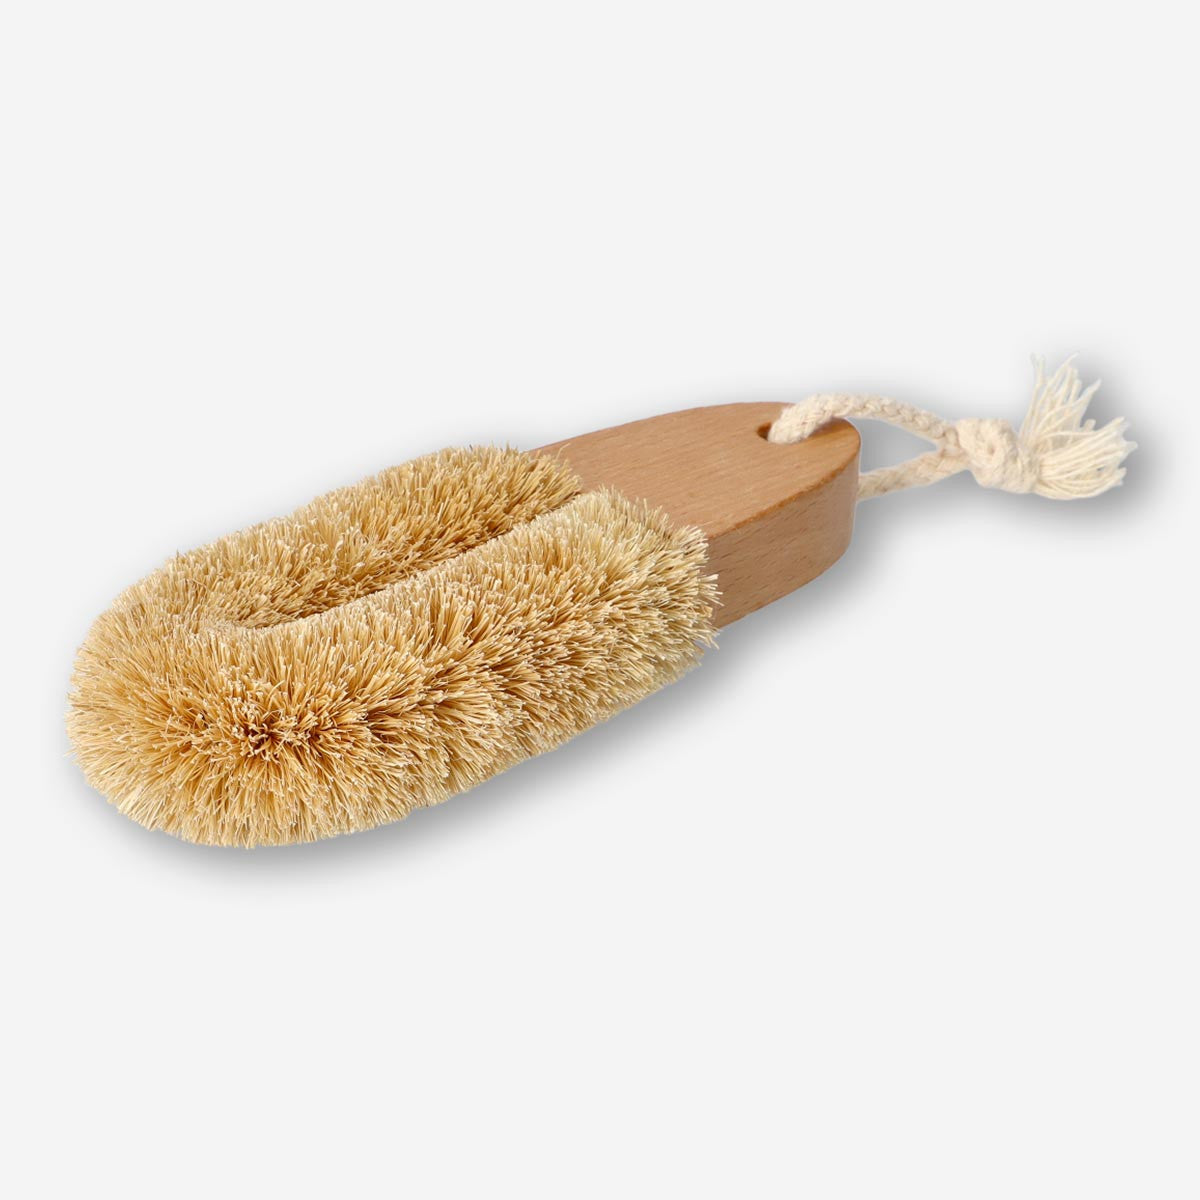 El genial cepillo para limpiar zapatillas que no sabías que necesitabas  (hasta ahora)